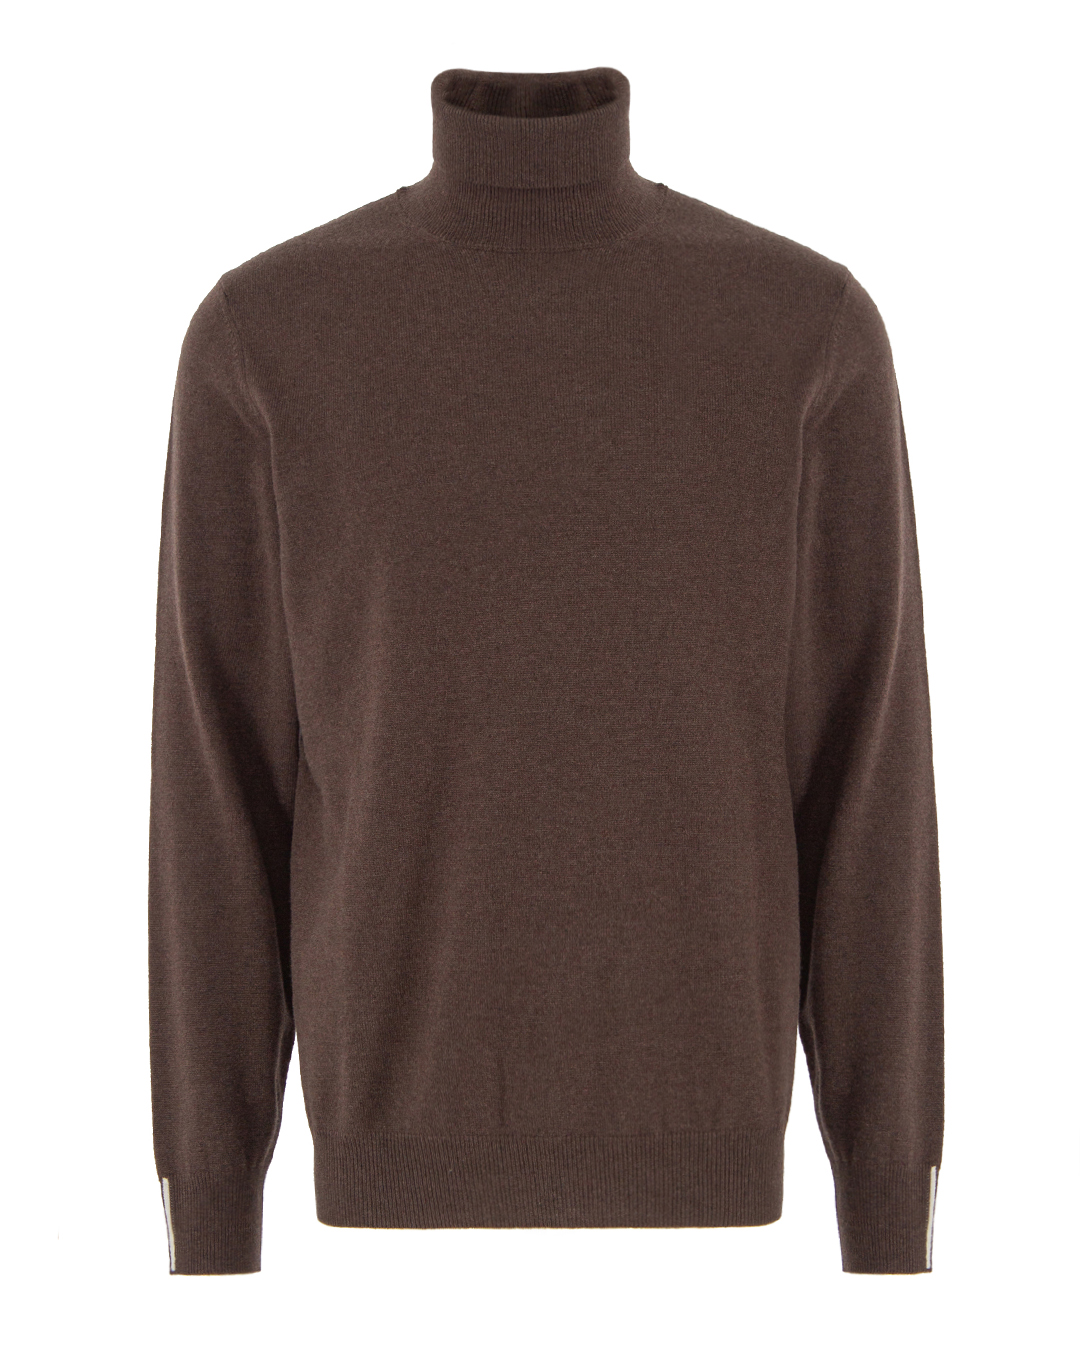 свитер Peserico R59139F12 коричневый 50, размер 50